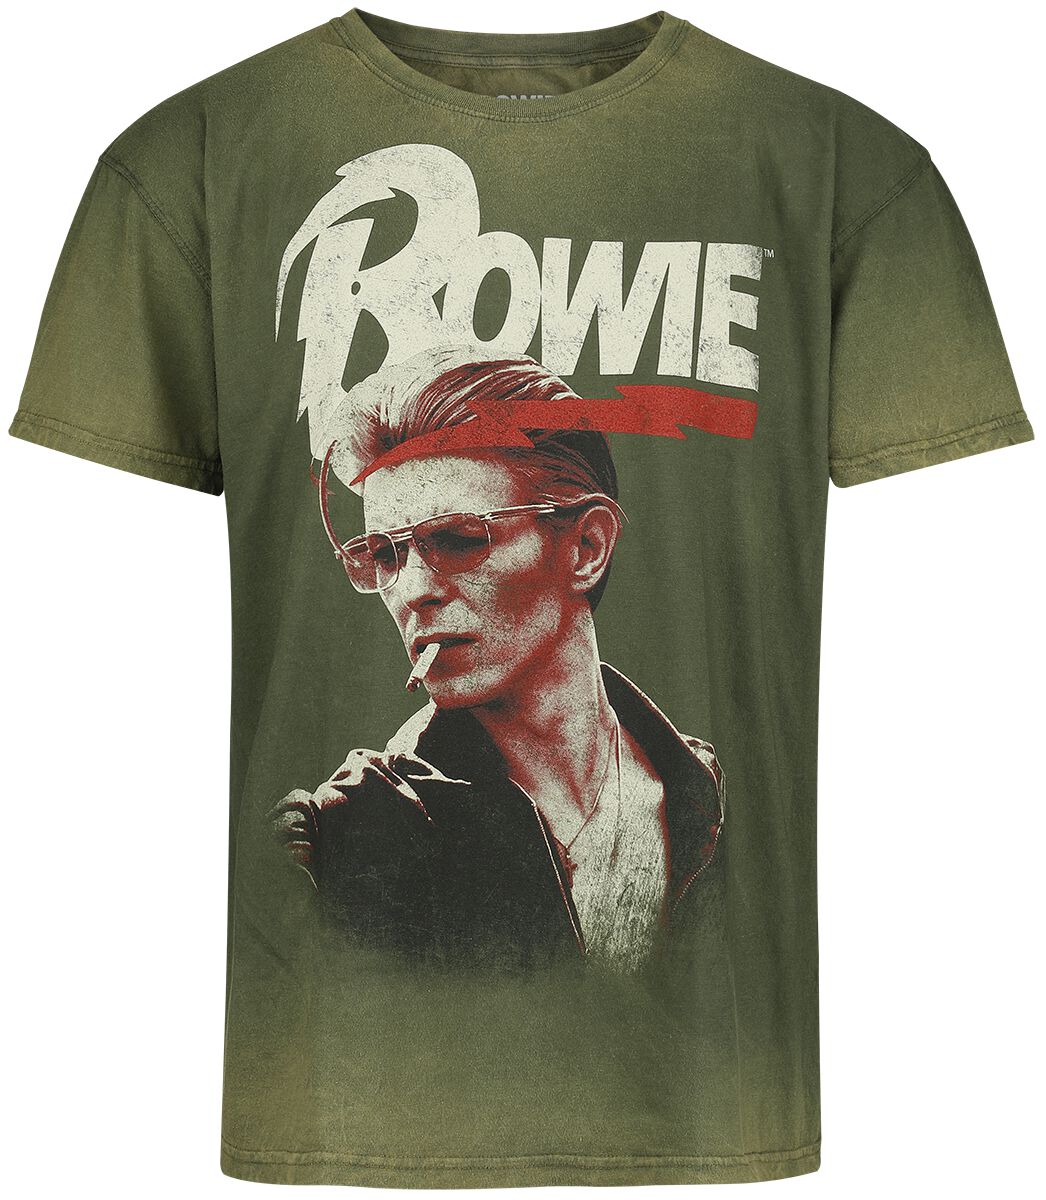 David Bowie T-Shirt - Smoking - S bis 3XL - für Männer - Größe XXL - grün  - Lizenziertes Merchandise!